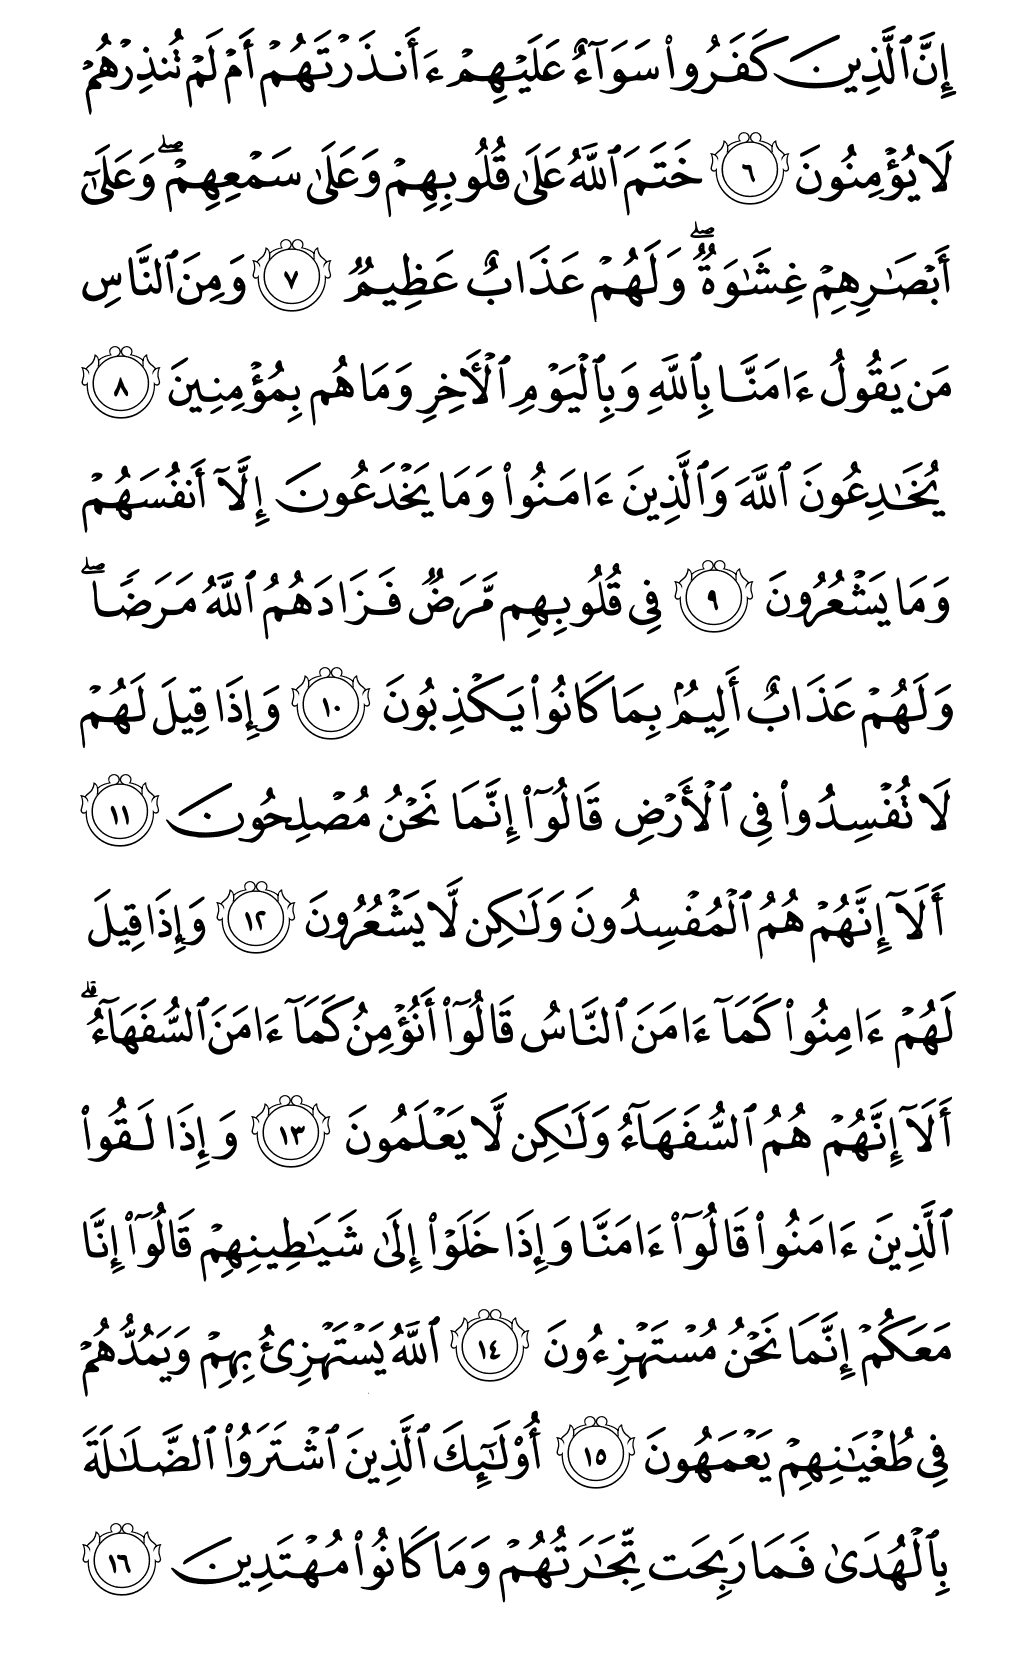 الصفحة رقم 3 من القرآن الكريم